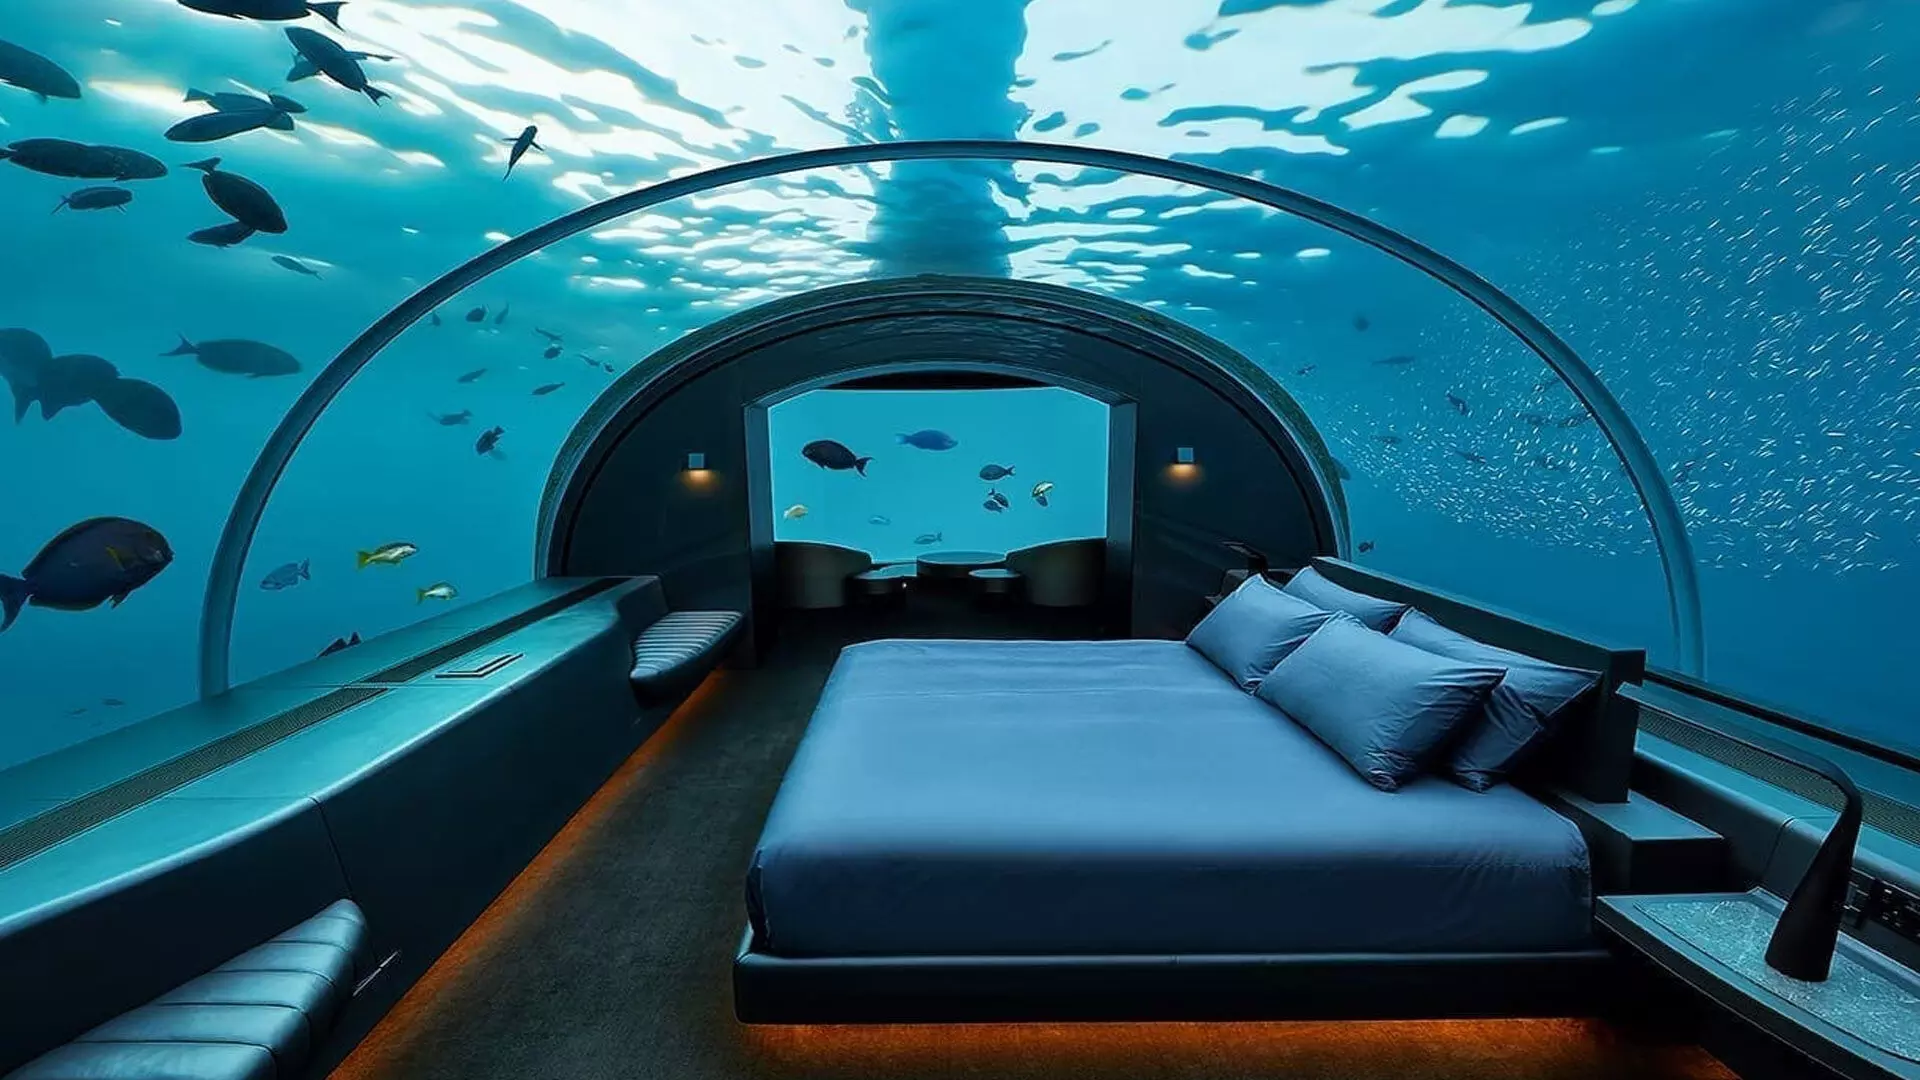 Underwater Hotel: पानी के नीचे का अद्भुद नजारा पेश करते हैं ये प्रसिद्ध अंडरवाटर होटल